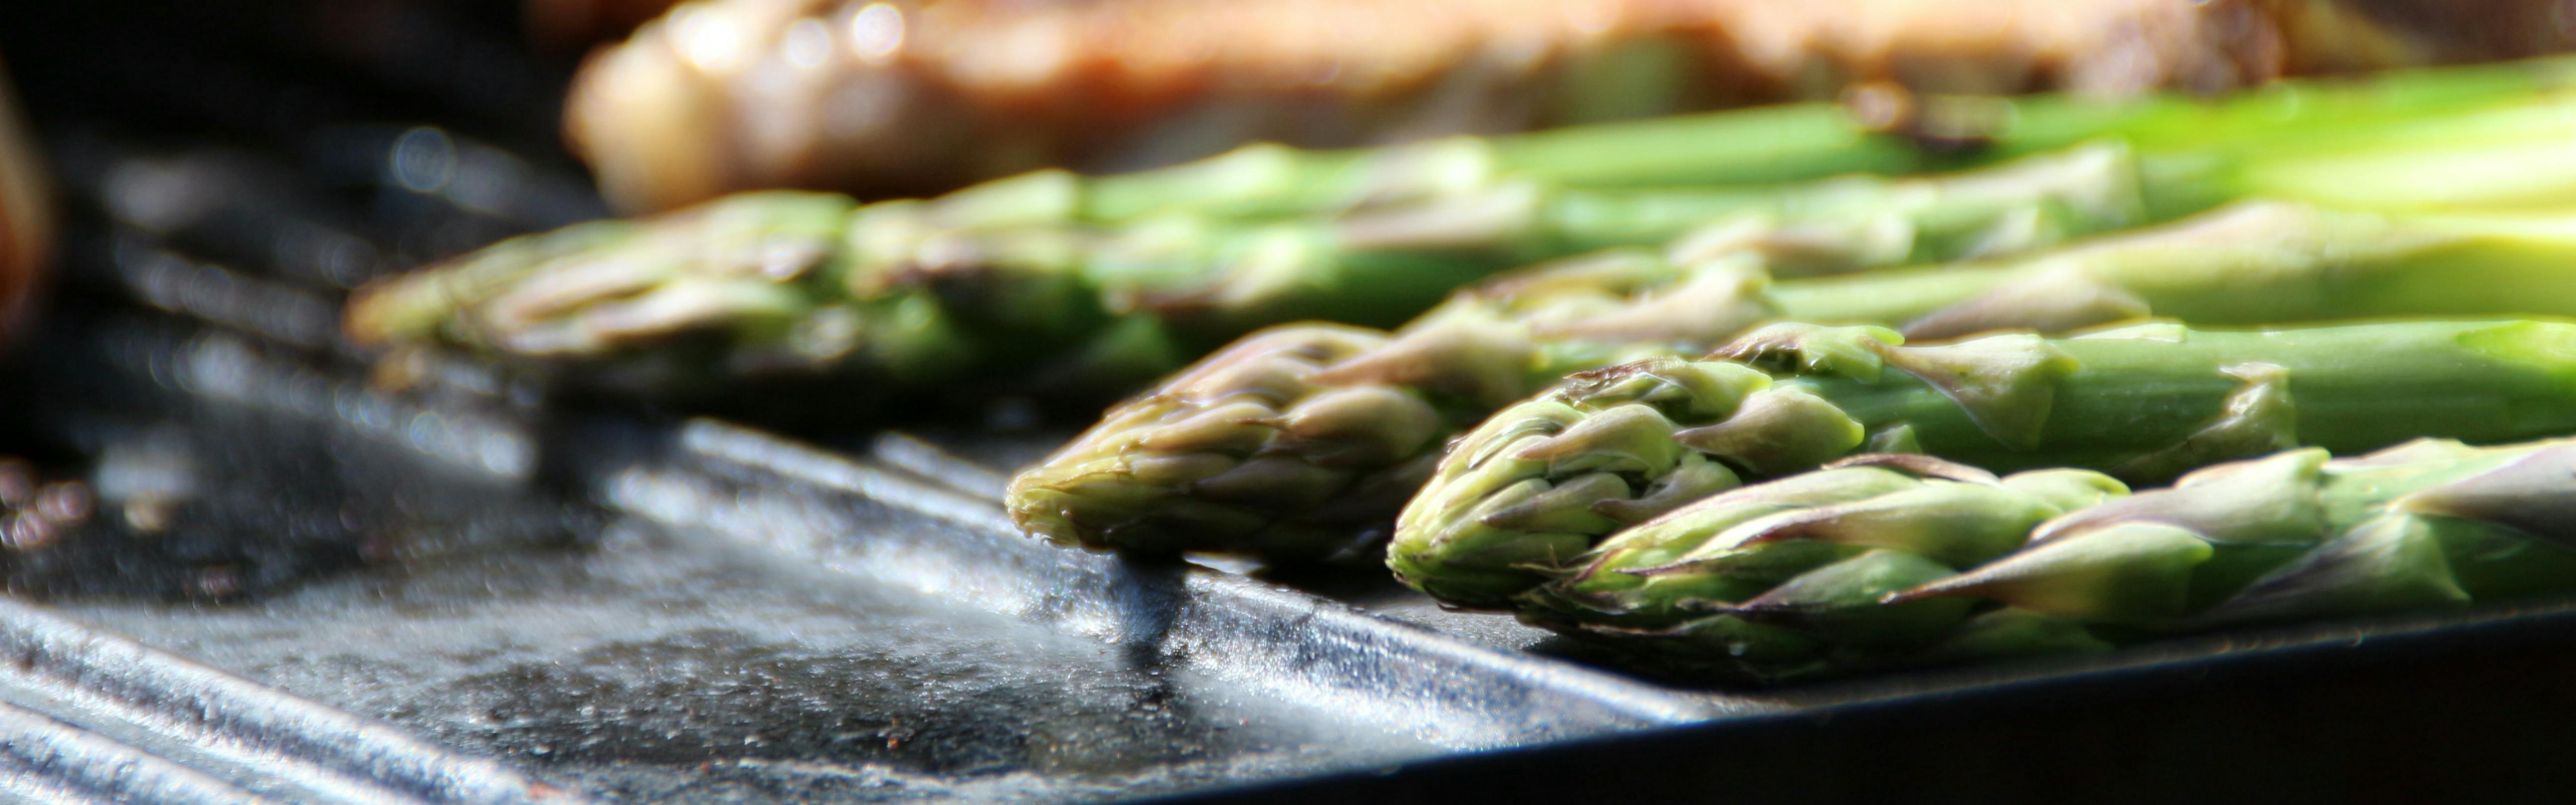 Asparagus on a grill.